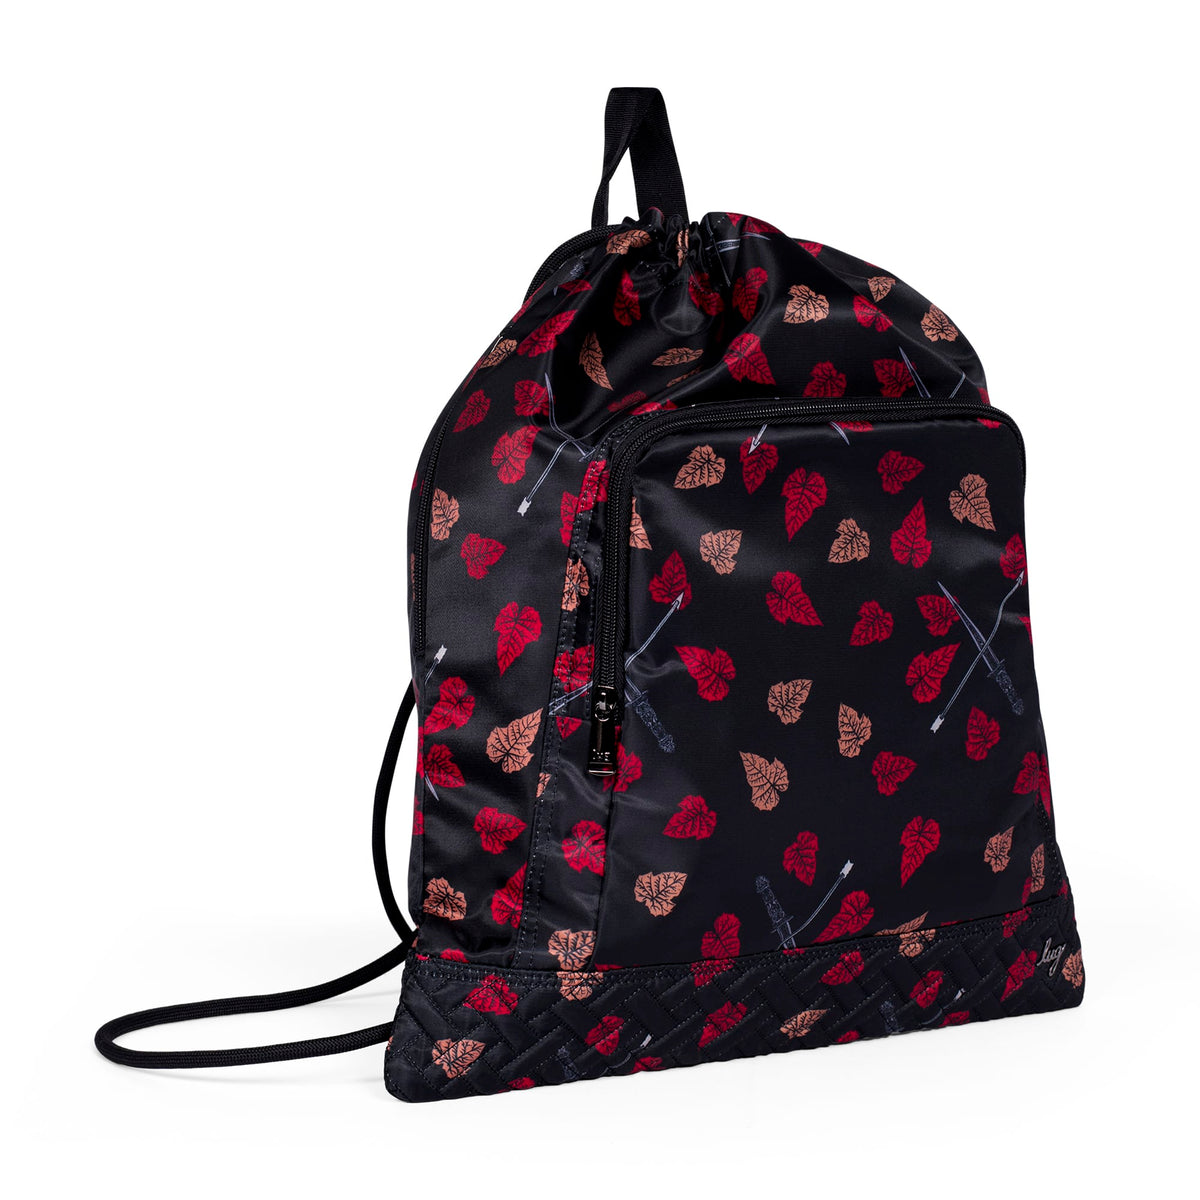 Nike Heritage Pink Drawstring Backpack